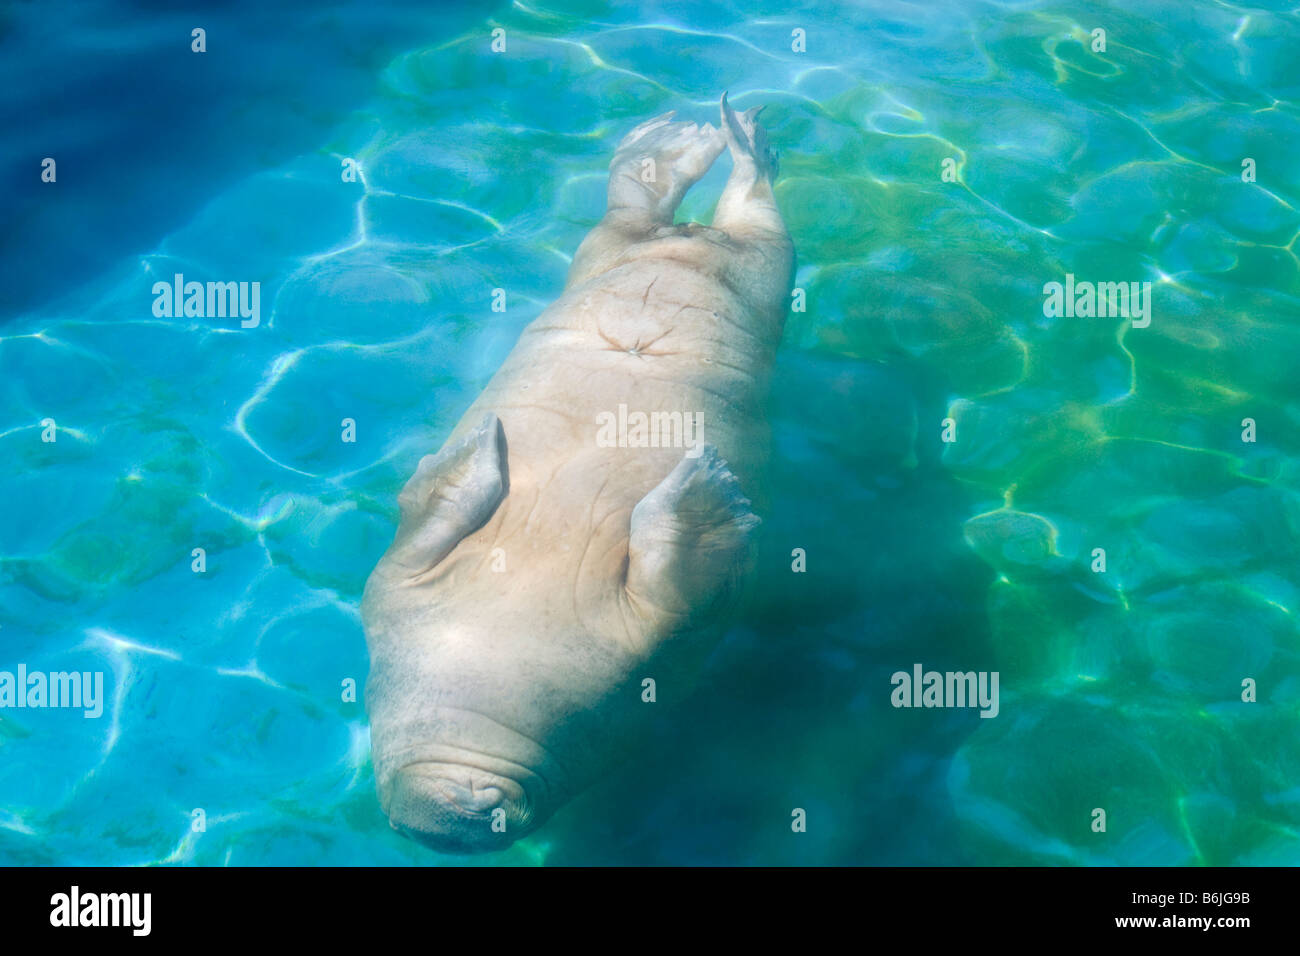 walrus 'odobenus rosmarus' diving in a blue water pool Stock Photo